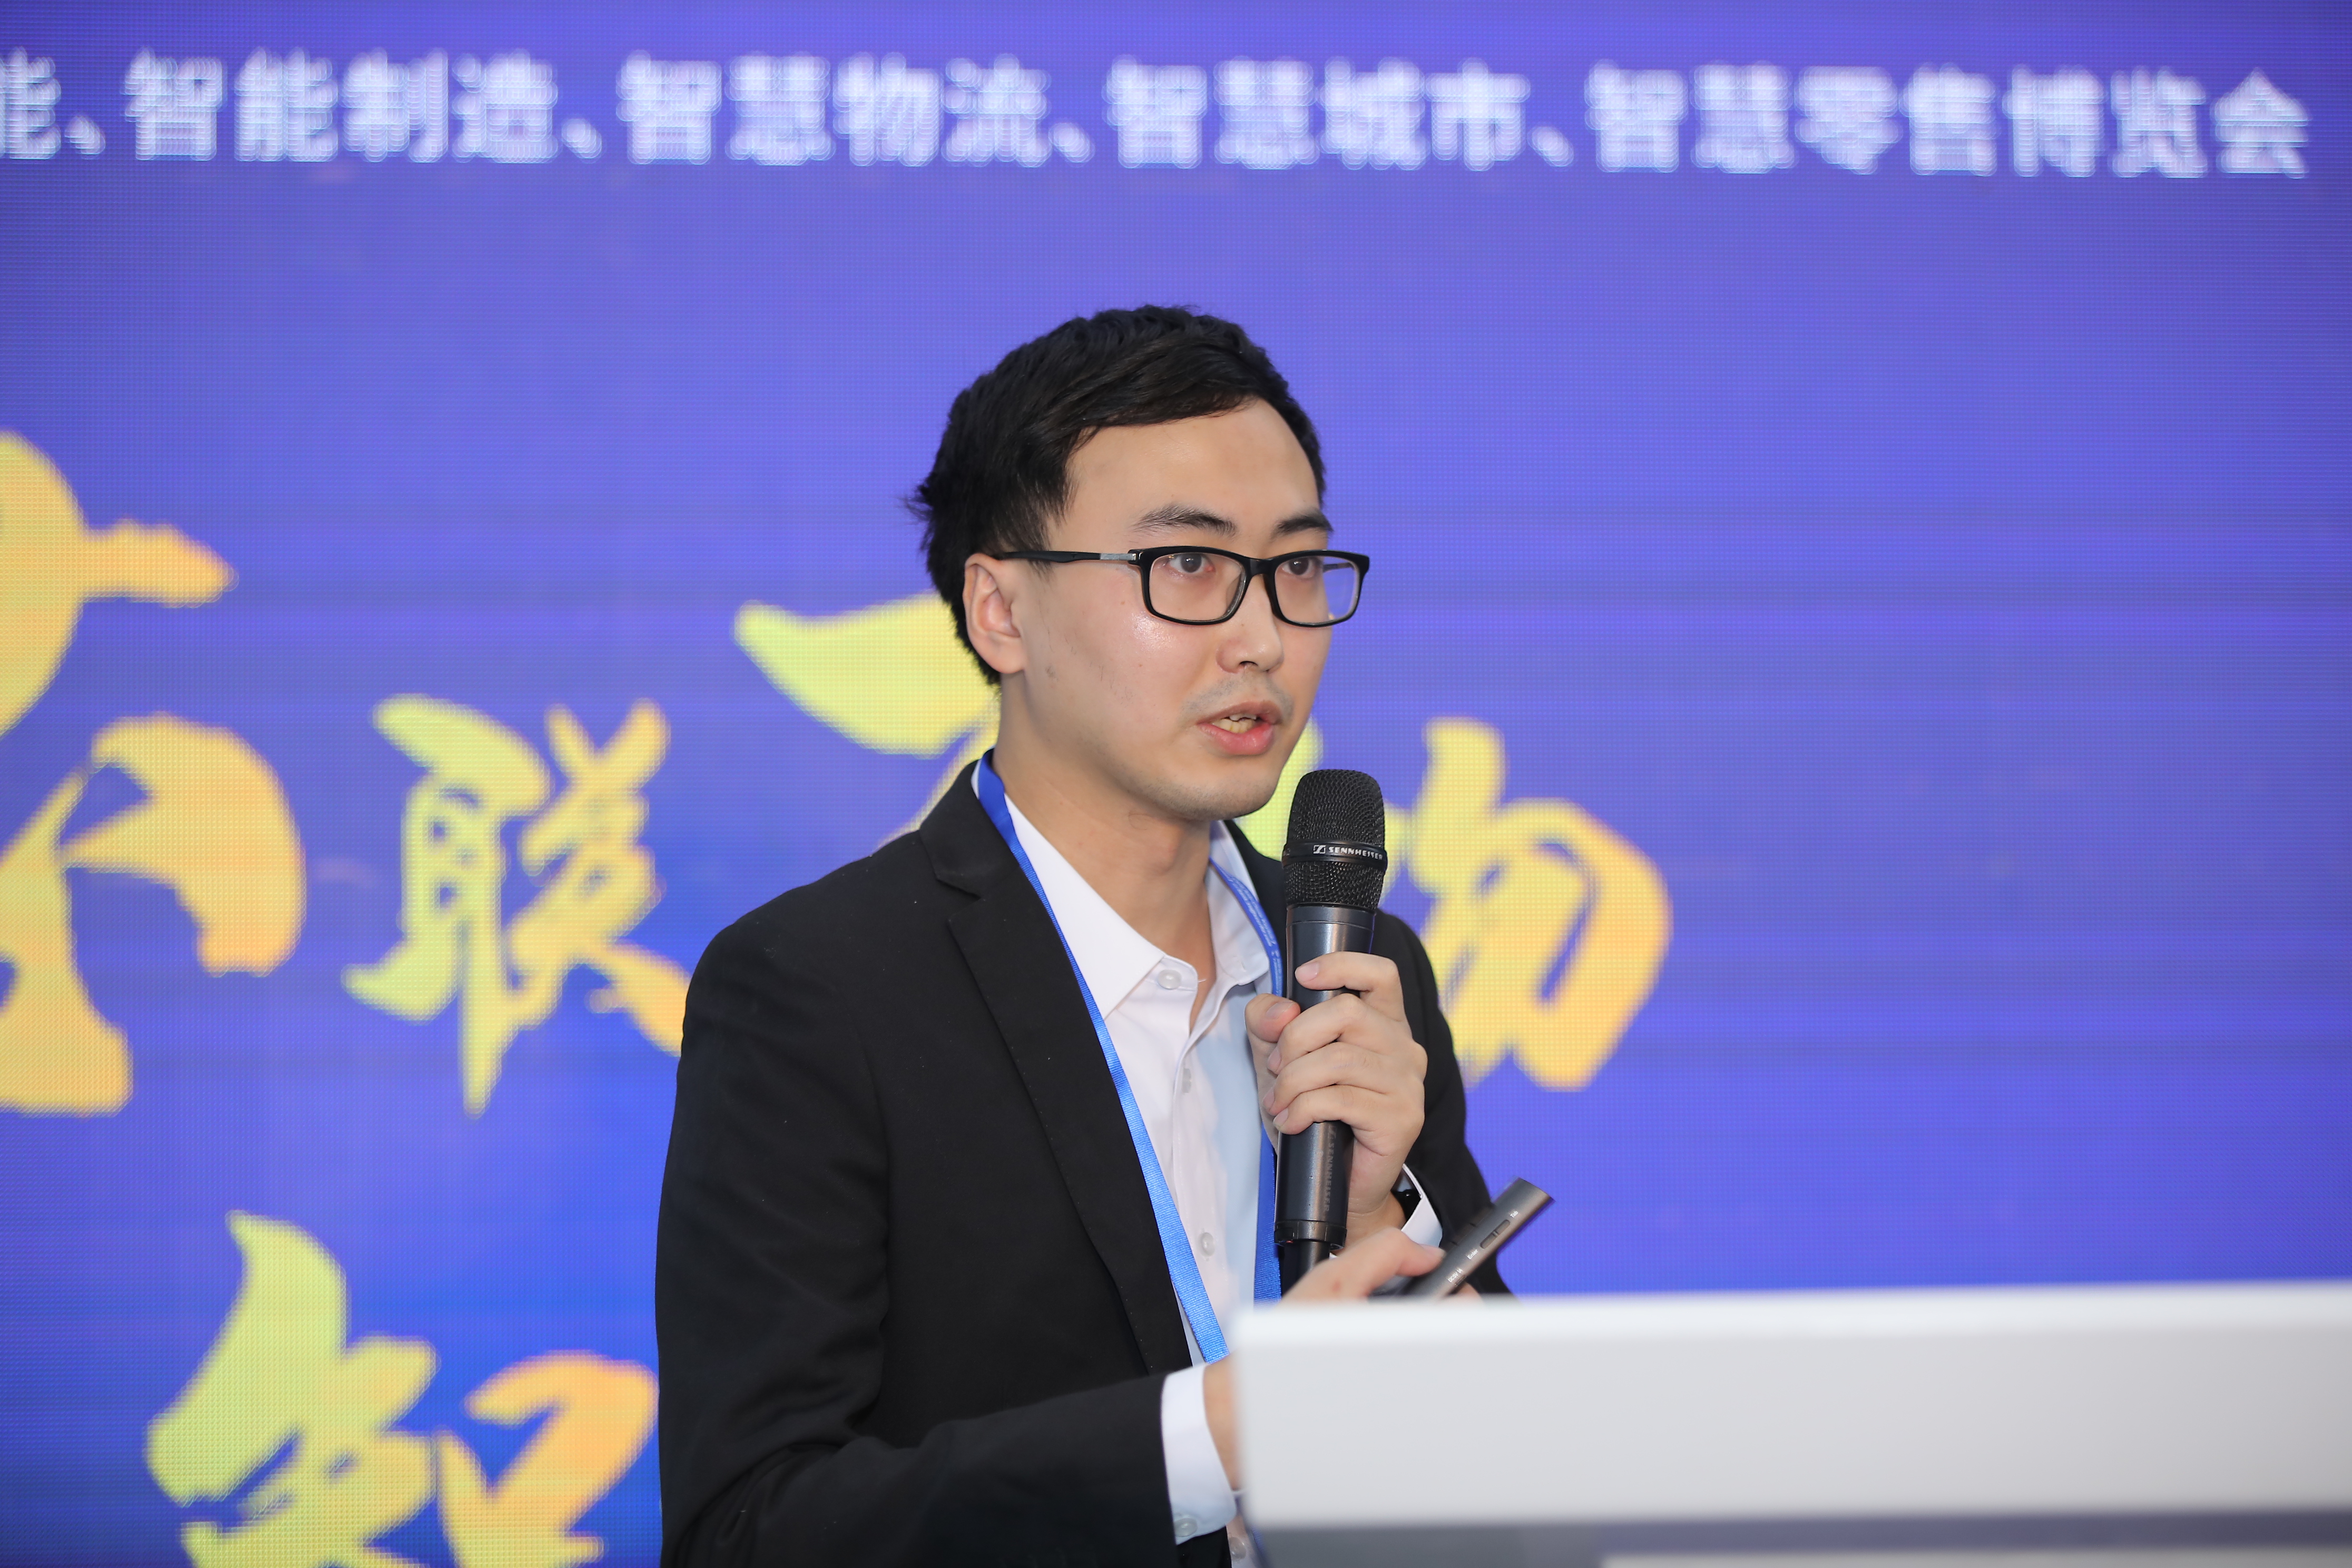 【论坛】IOTE 2021 深圳国际工业互联网创新技术与应用论坛 